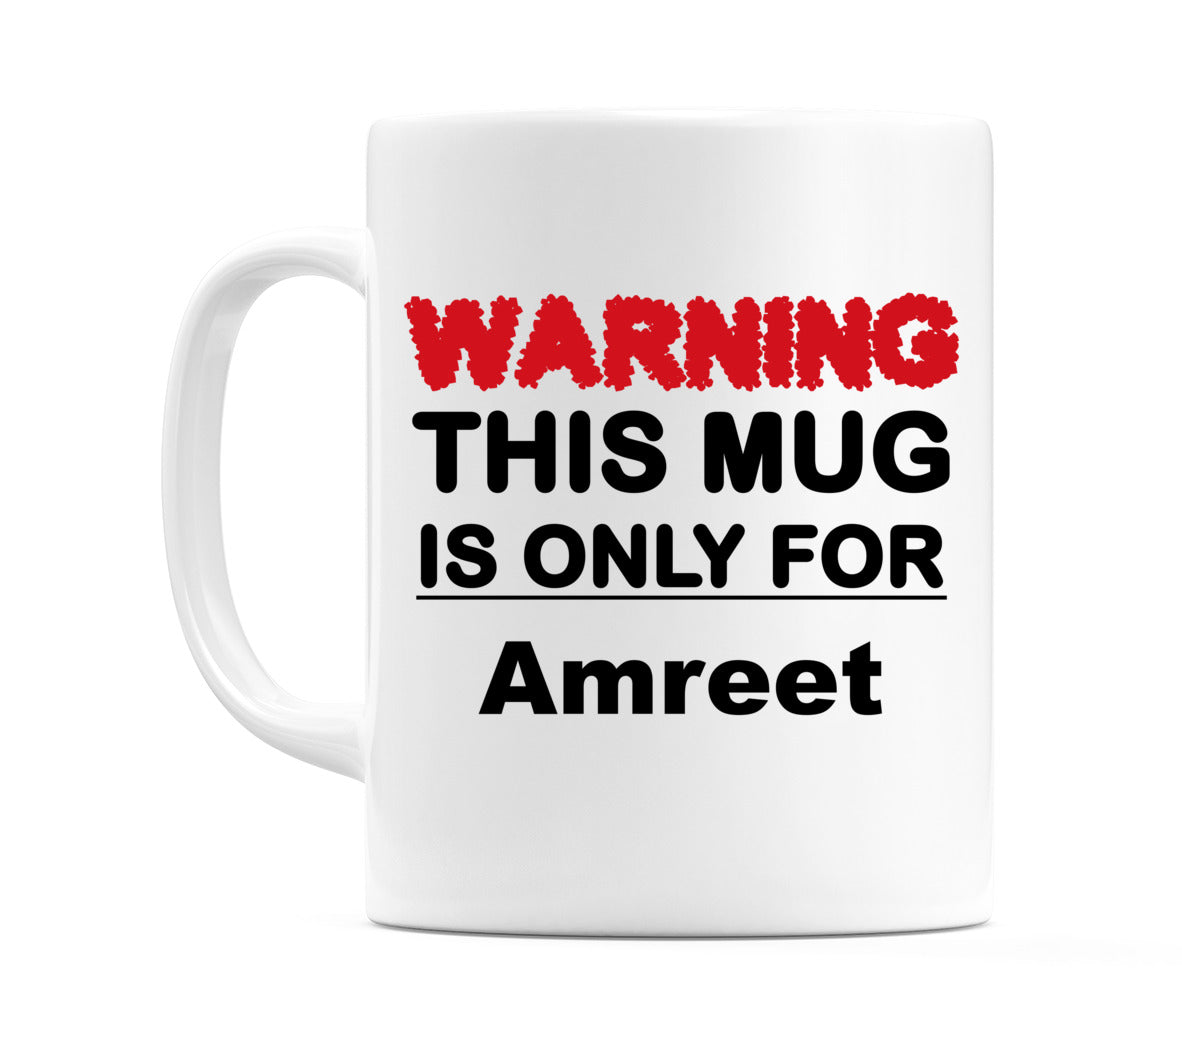 Warning This Mug is ONLY for Amreet Mug